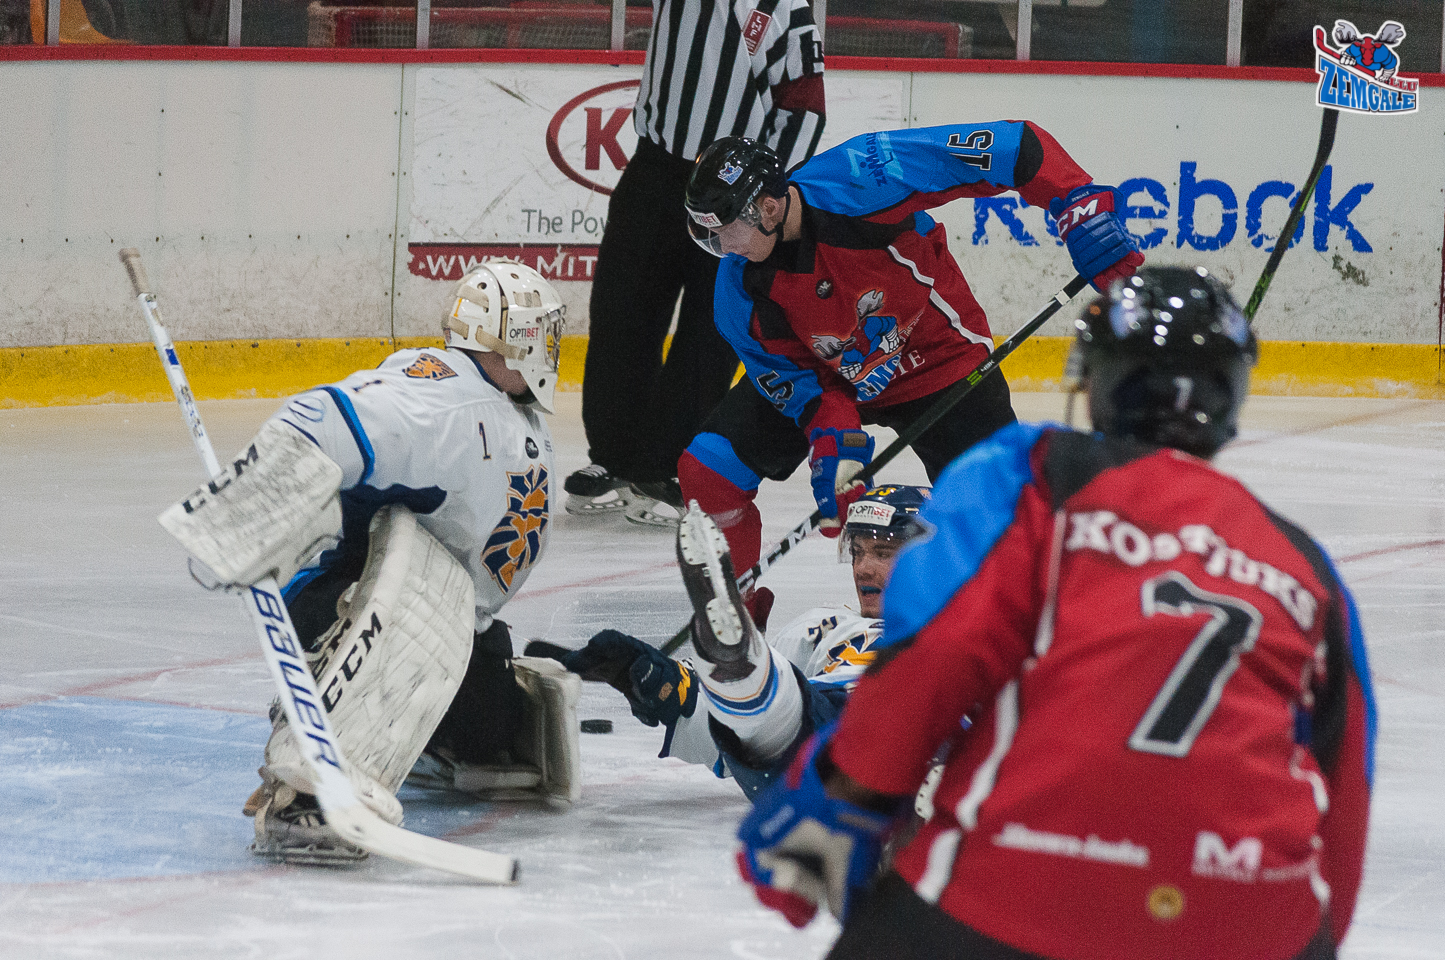 Optibet hokeja līgas regulārā čempionāta spēlē Zemgale/LLU uzvar HS Rīga ar rezultētu 2:0 Jelgavas ledus hallē 2017. gada 25. oktobrī.